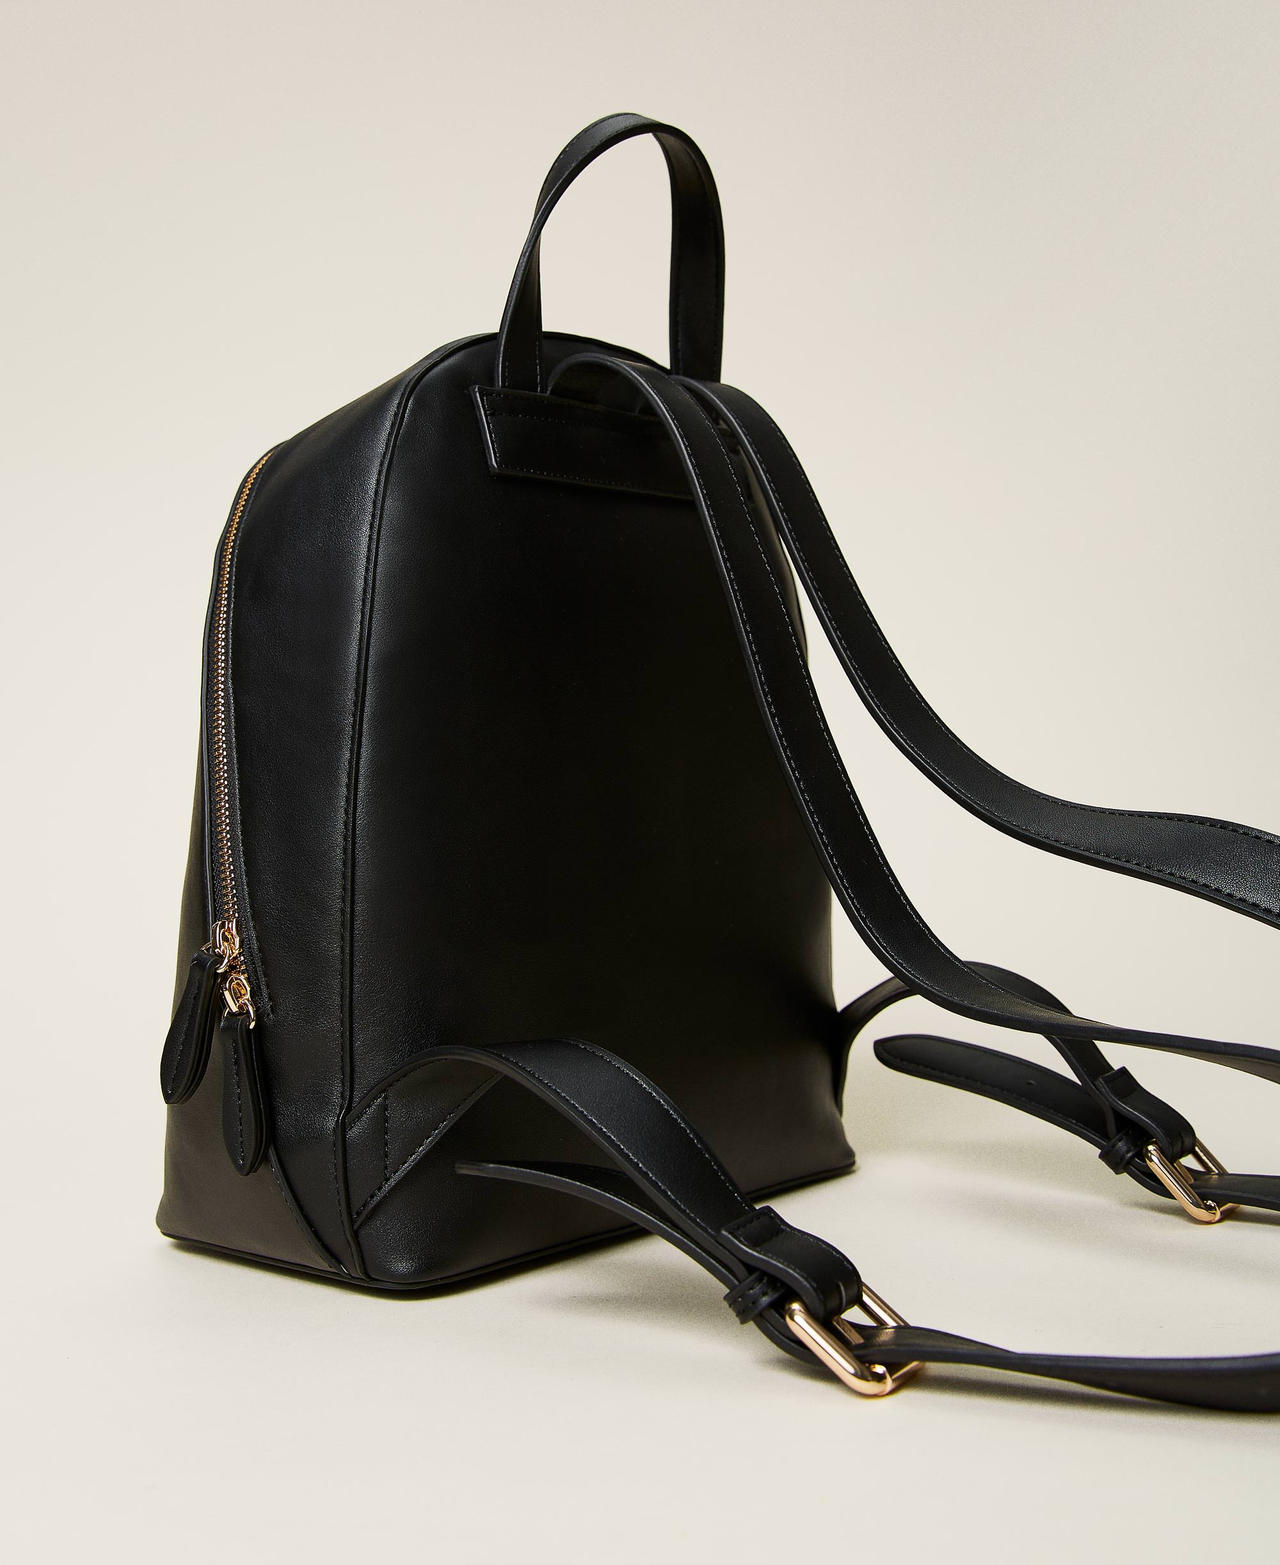 Рюкзак с крупным цветочным логотипом Черный/Oval T Цветок женщина 222TD8122-03